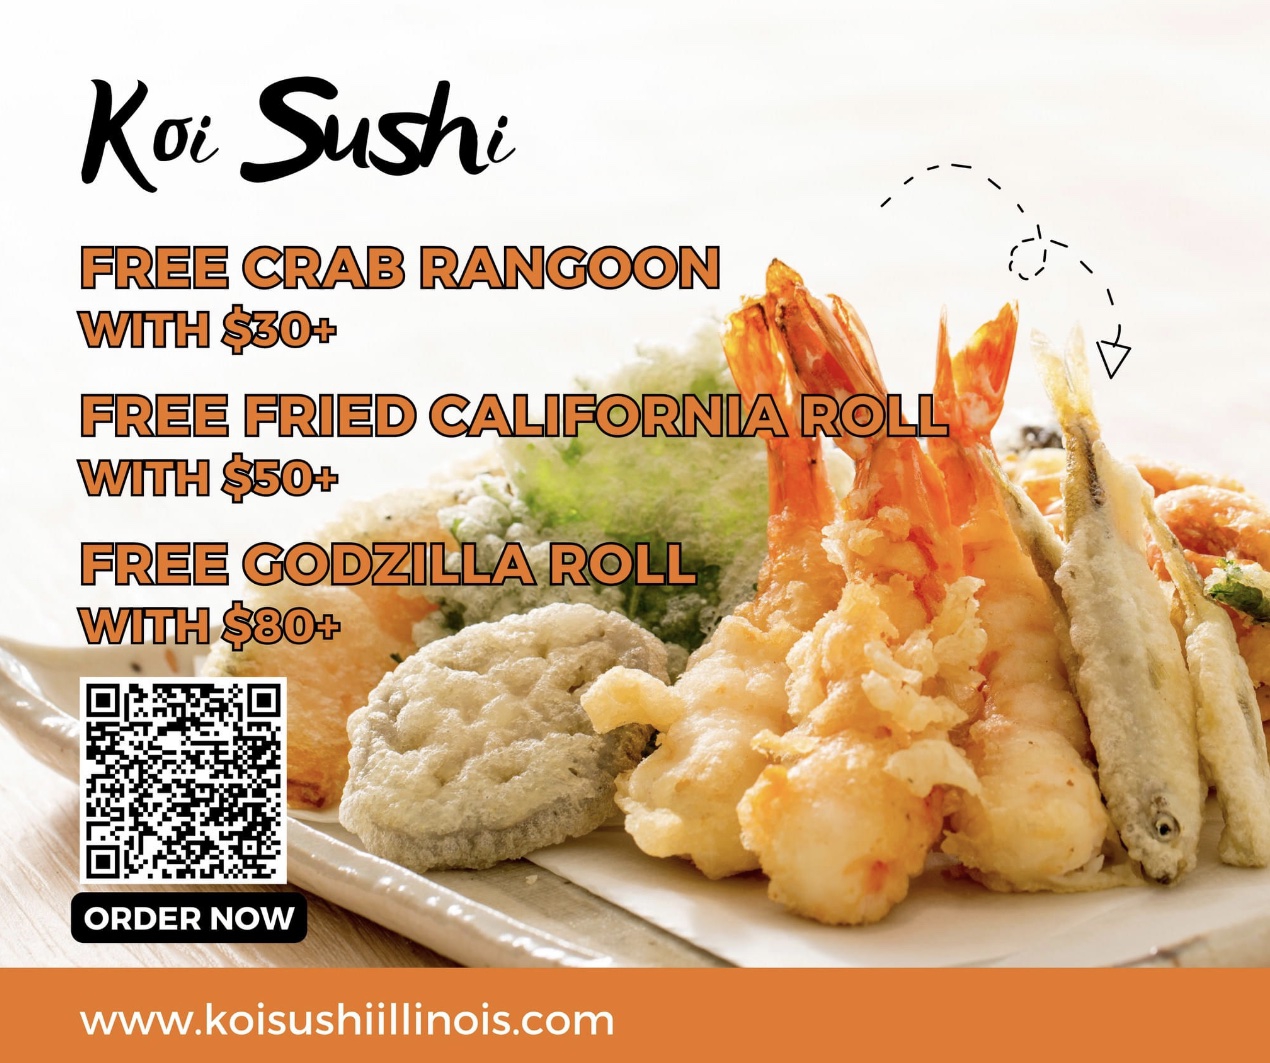 Koi Sushi Free Item Coupon